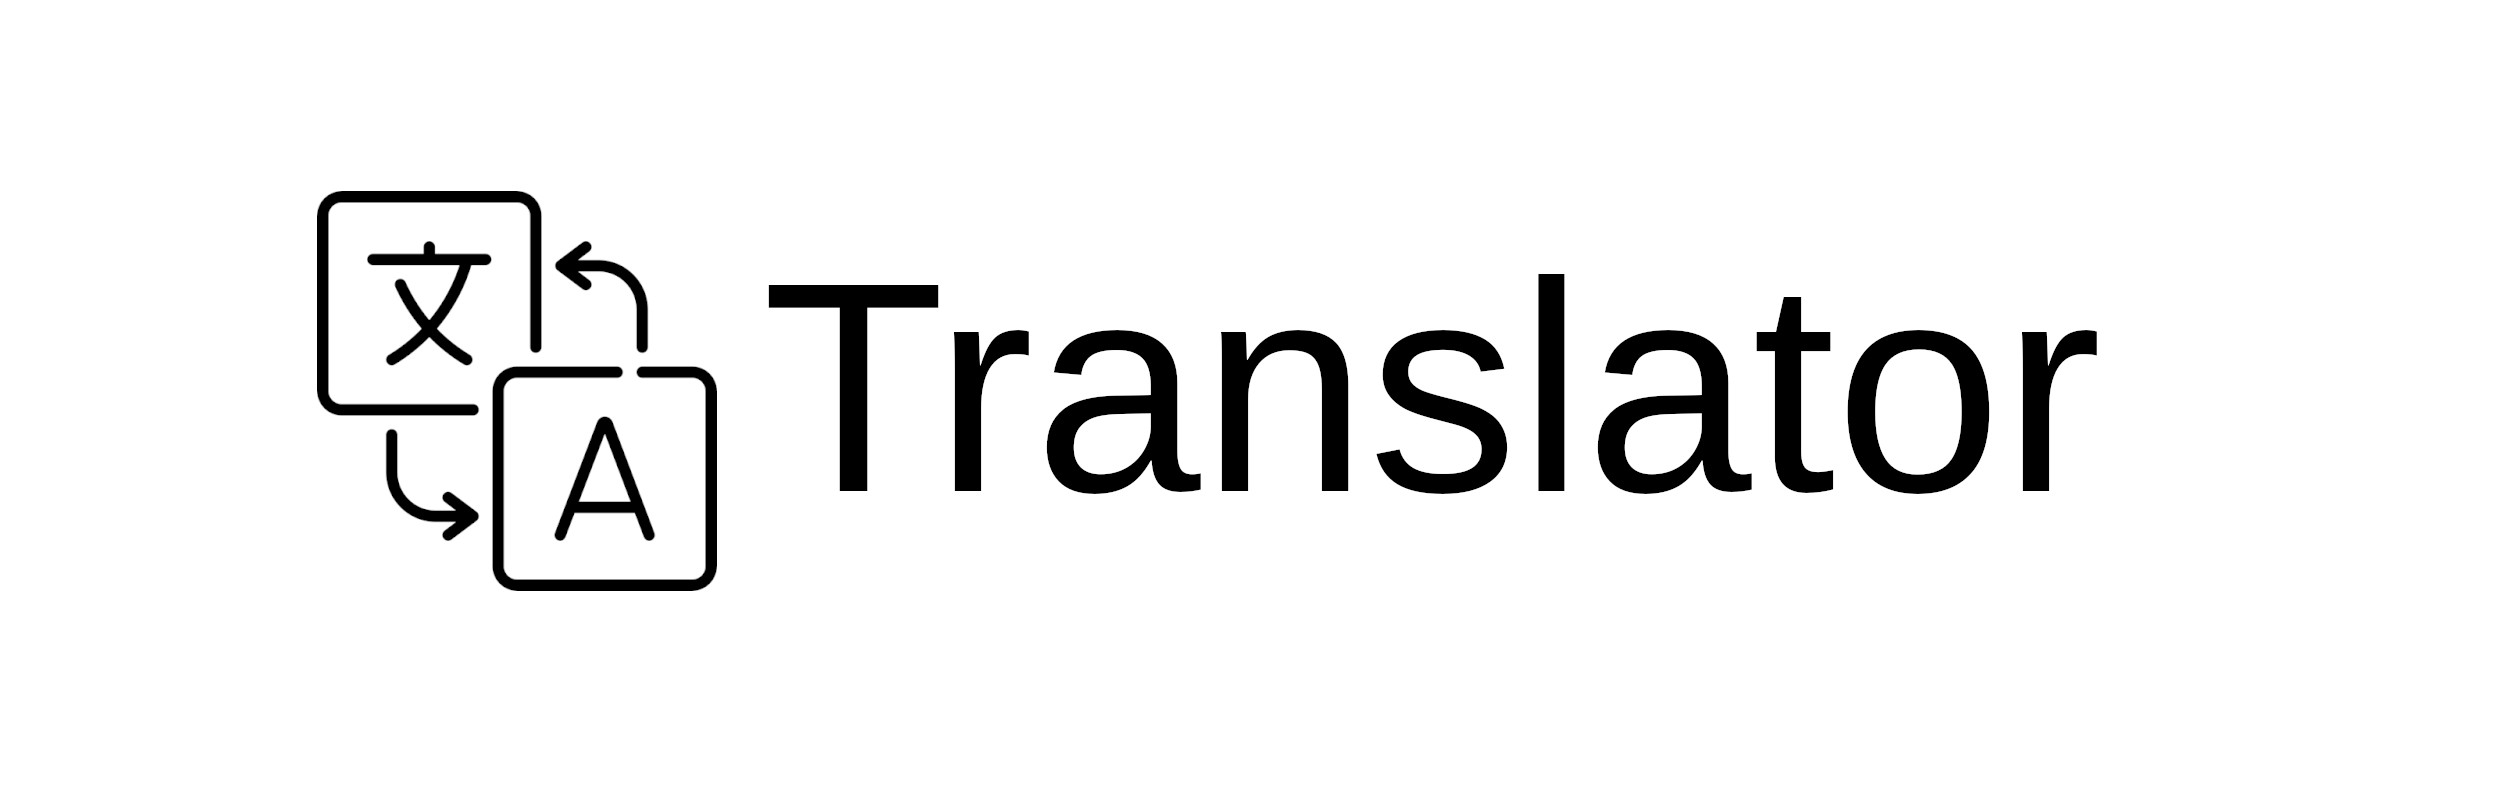 Plasma Translator Logo